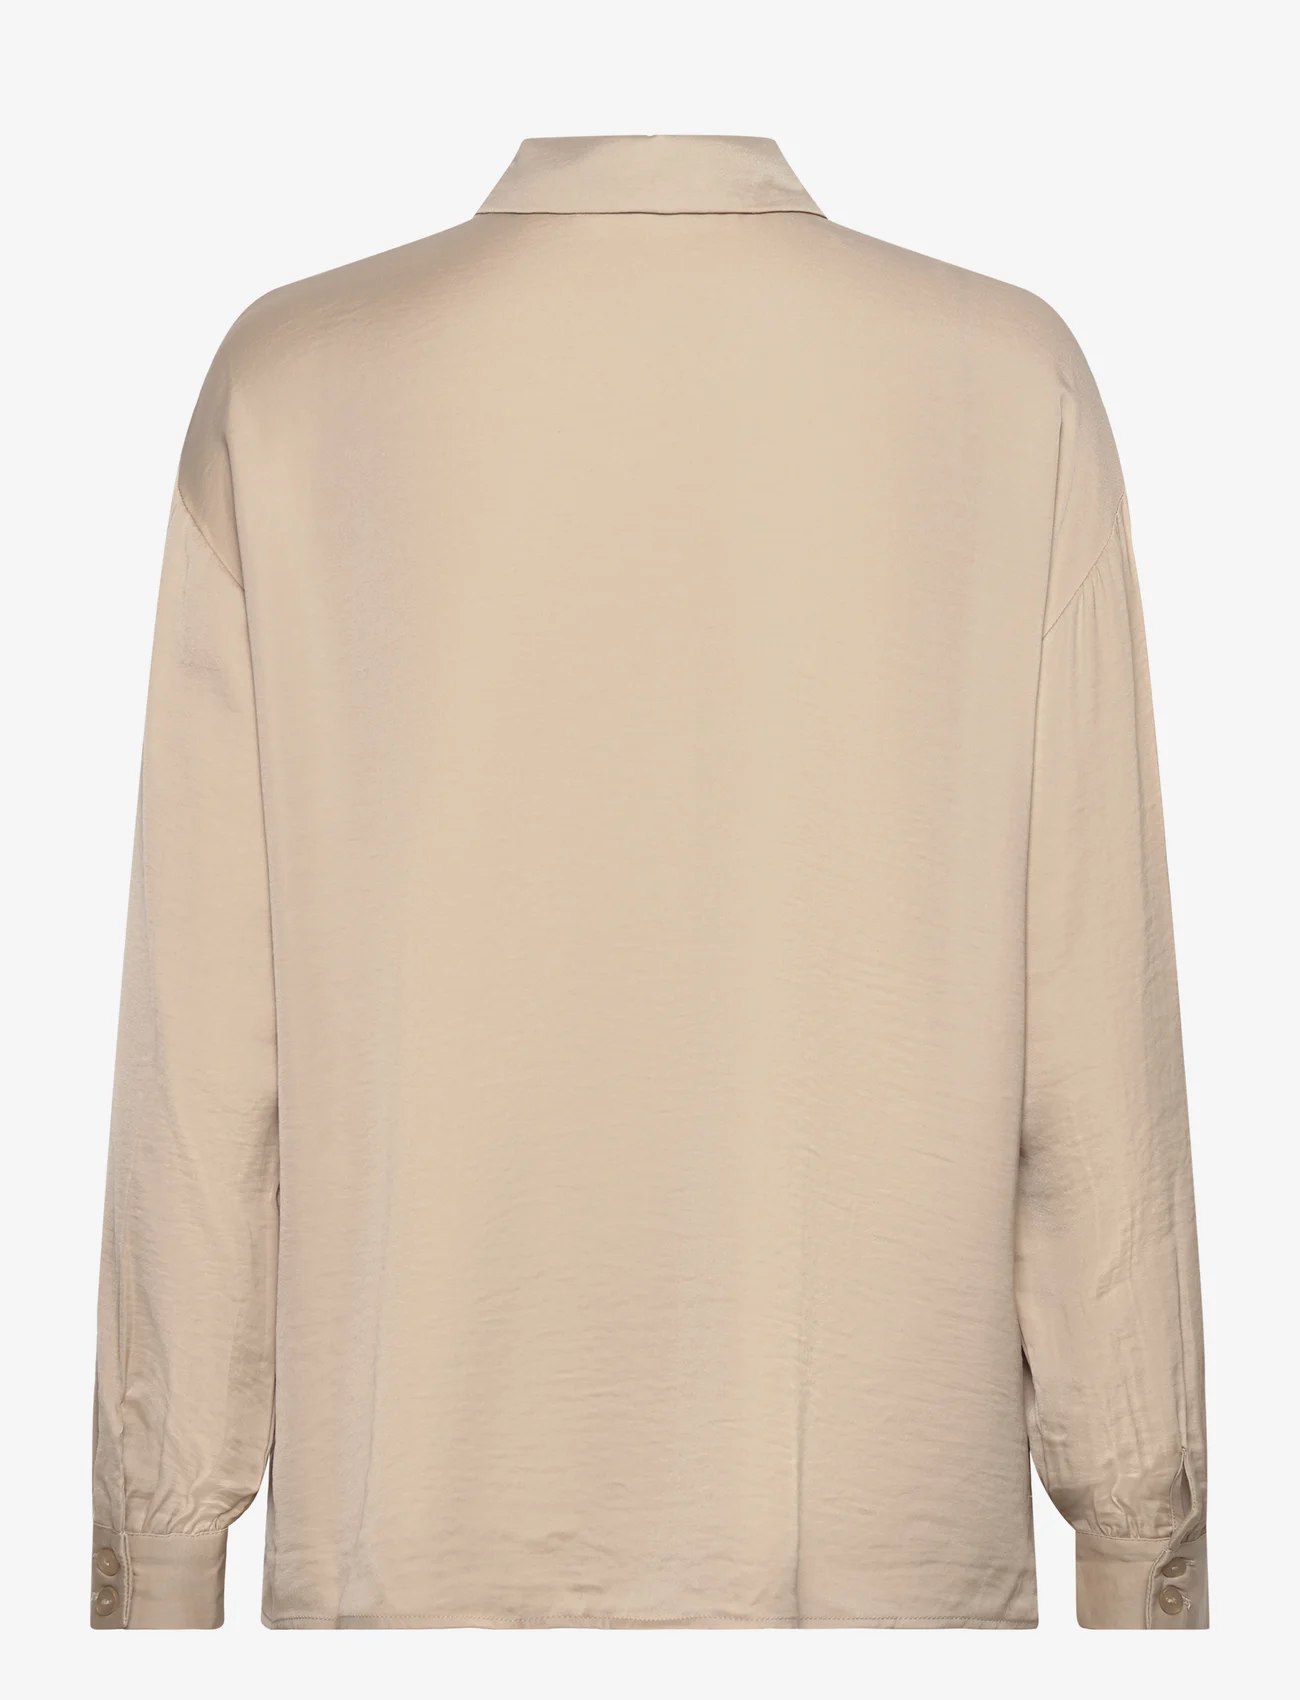 MSCH Copenhagen - MSCHNanella Maluca Shirt - long-sleeved shirts - trench coat - 1